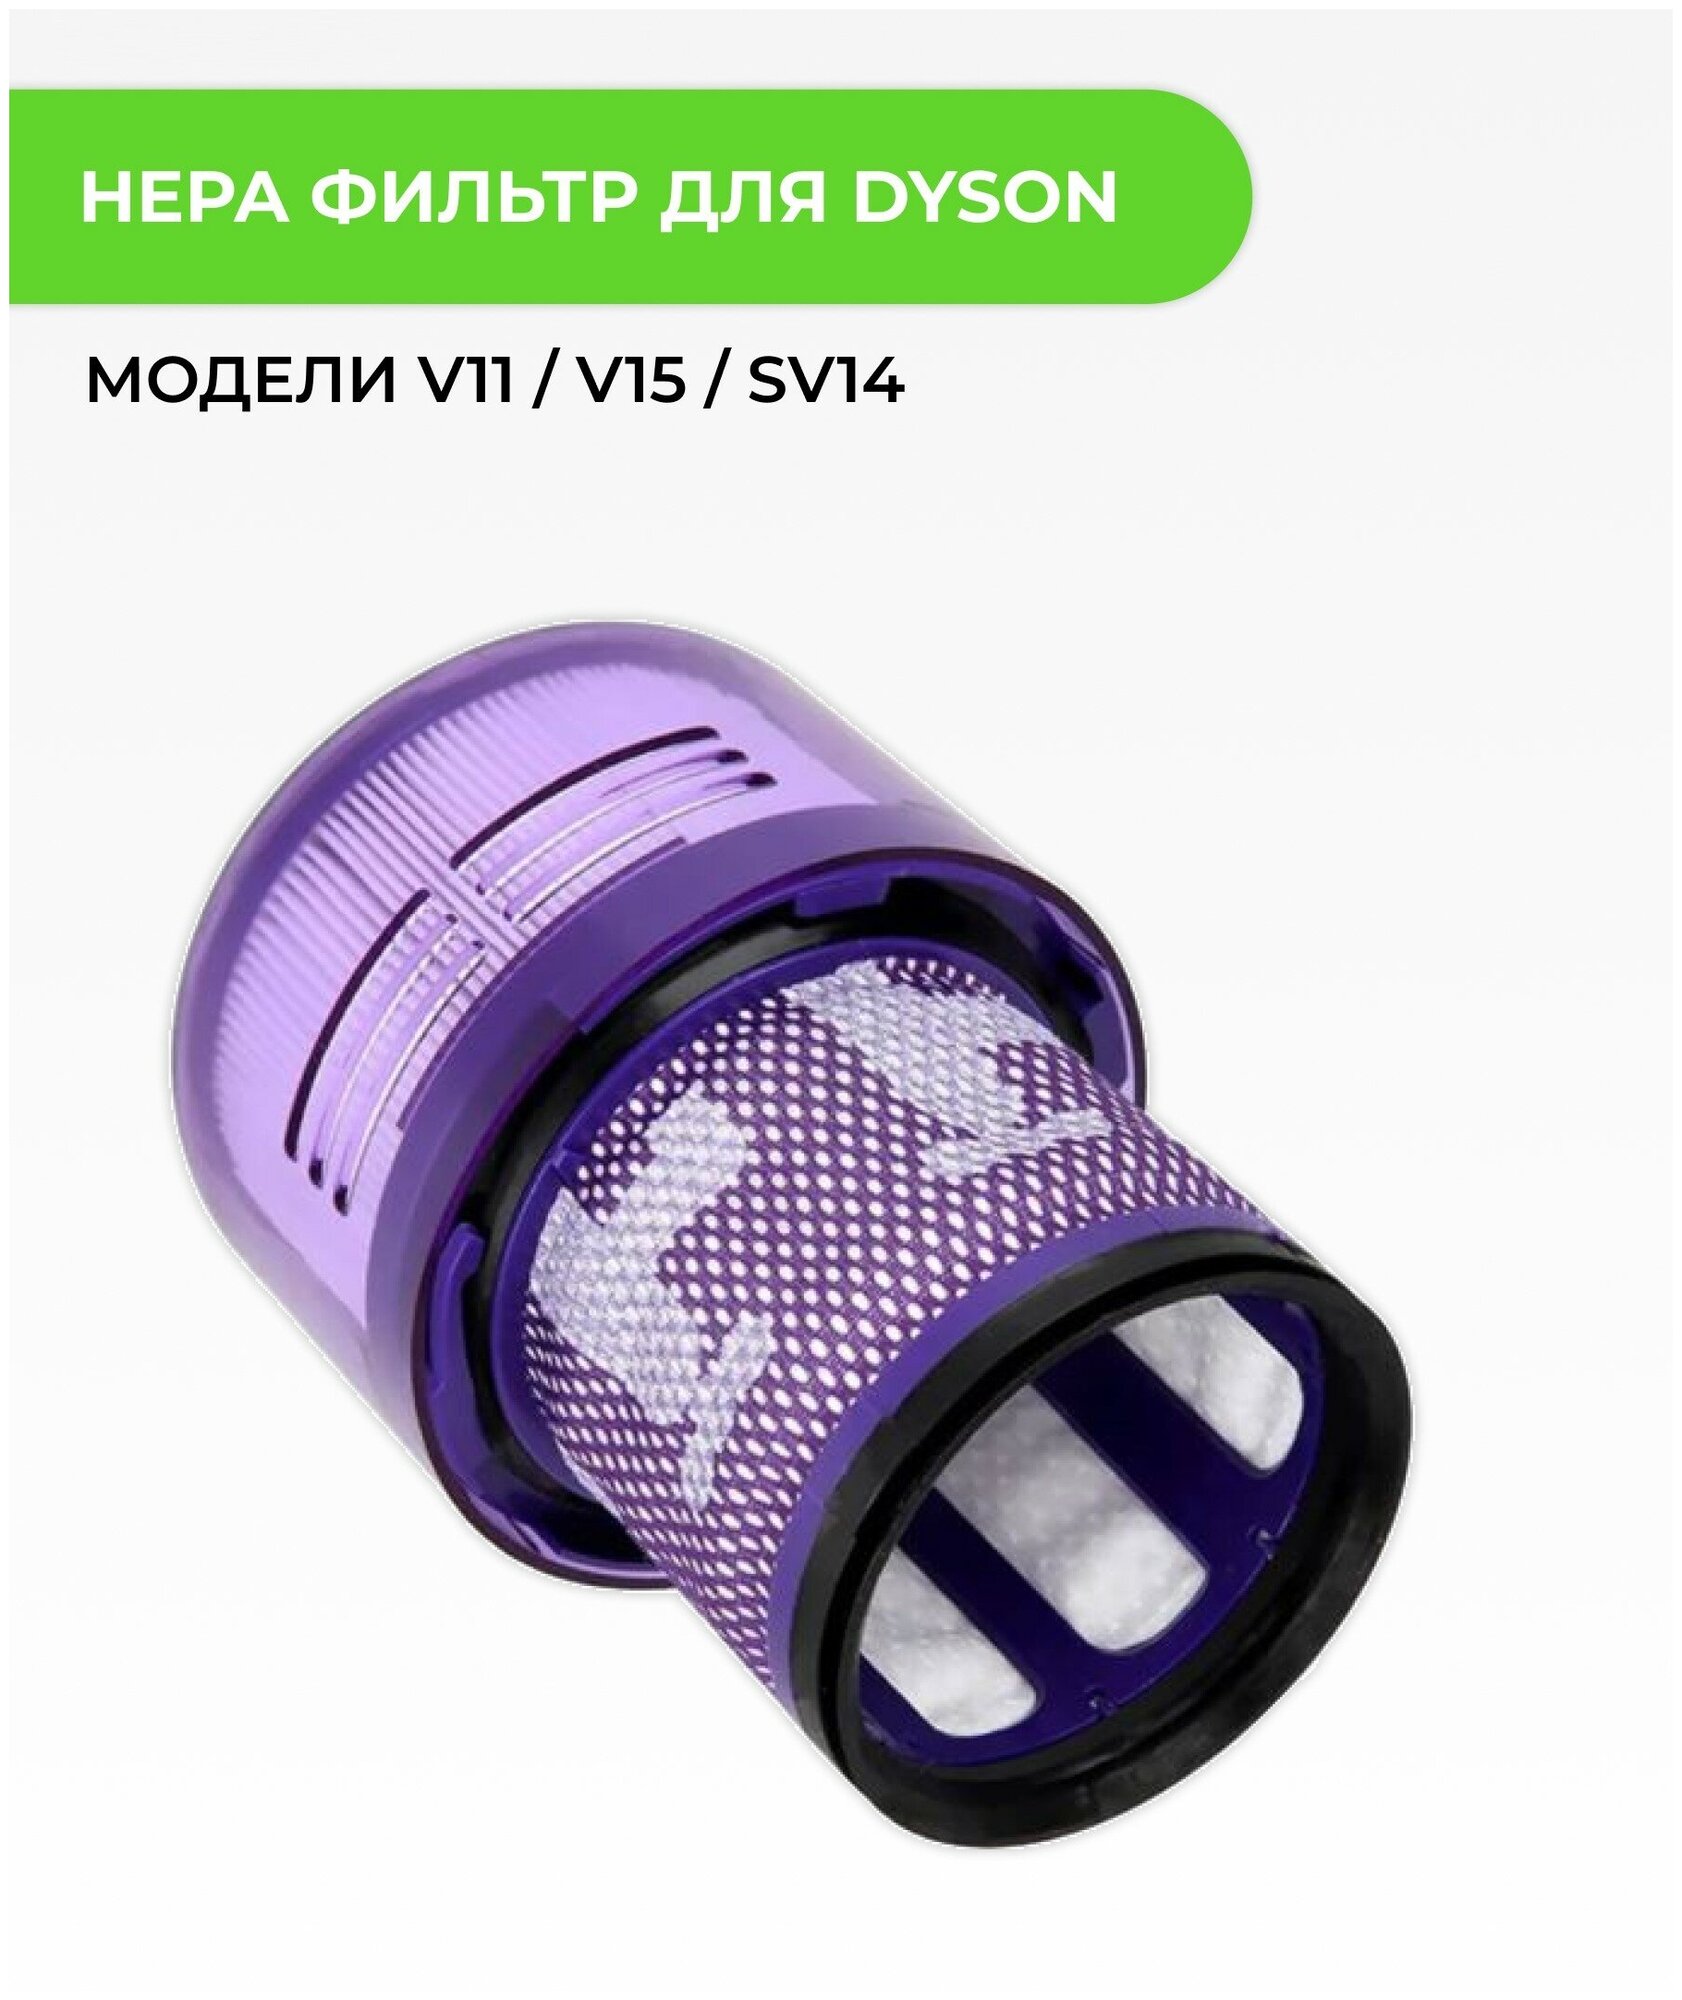 Hepa фильтр ABC для пылесоса Dyson V11 / V15 / SV14